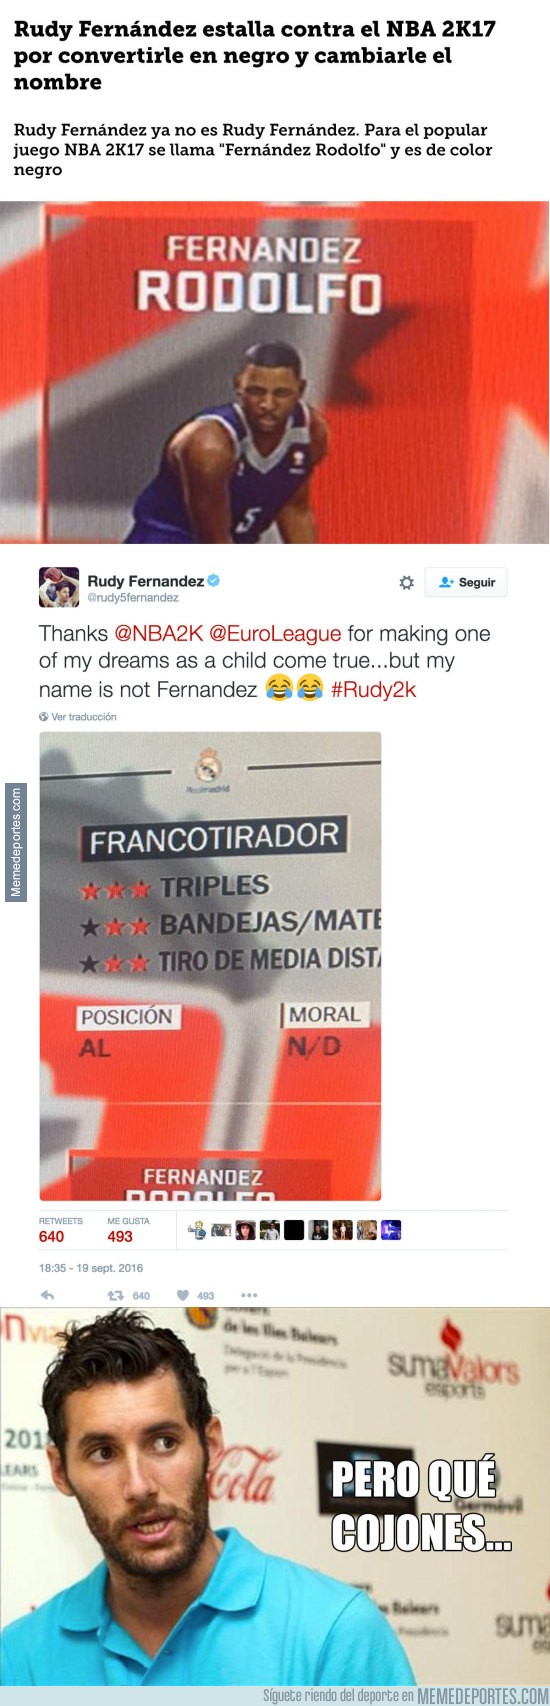 909506 - Rudy Fernández estalla contra el NBA 2K17 por convertirle en negro y cambiarle el nombre